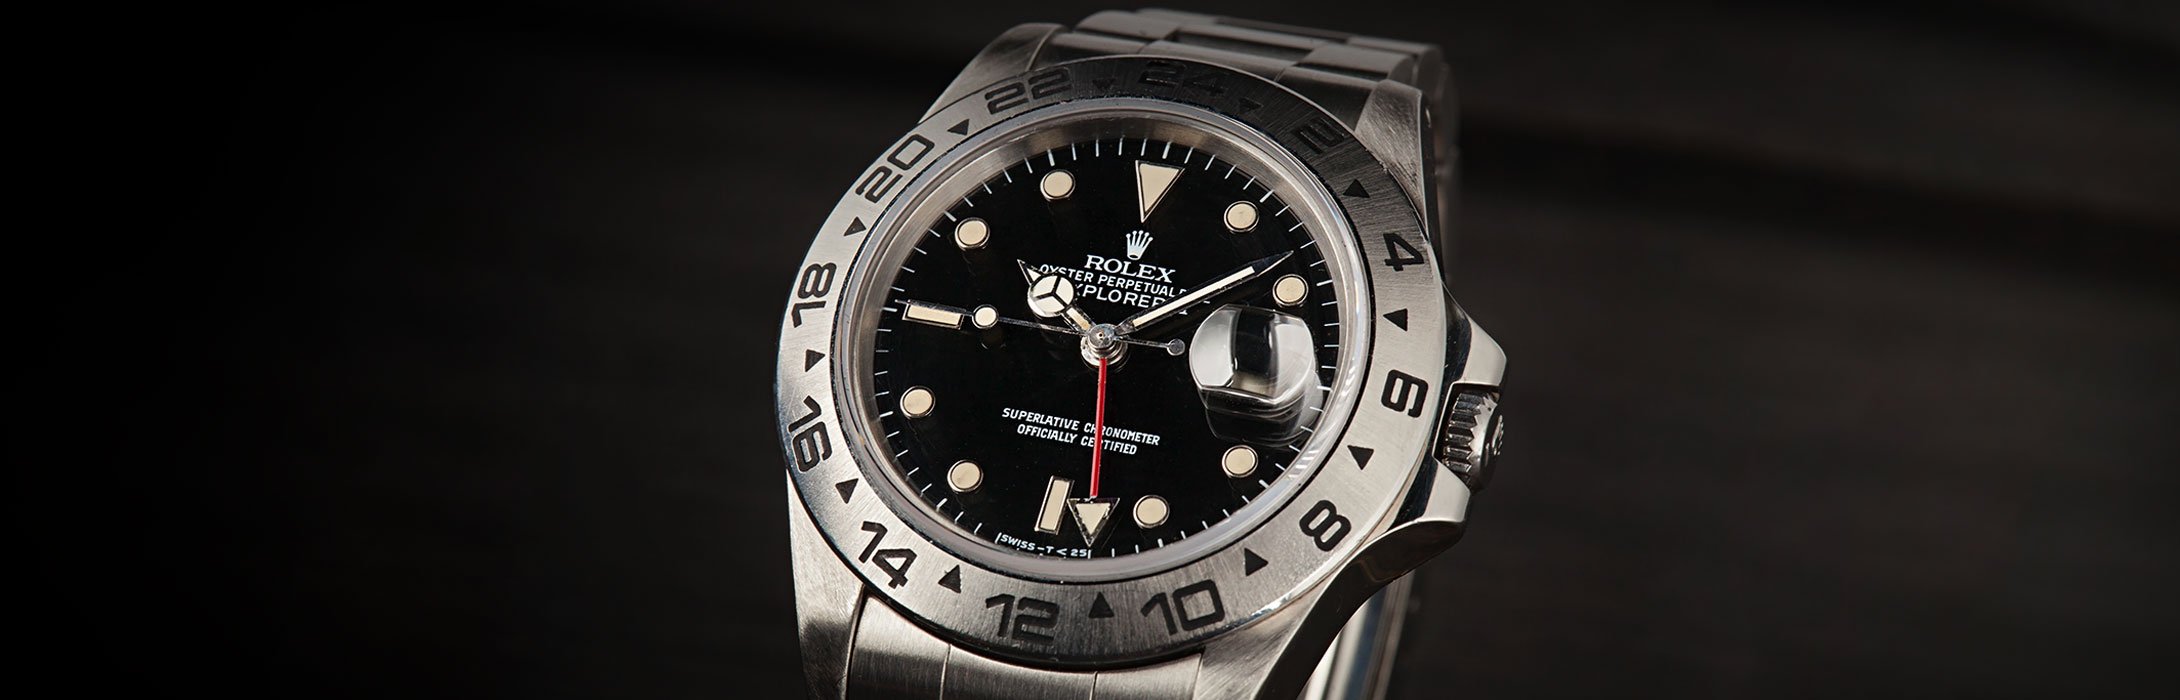 Vintage Rolex Watches Under 10k